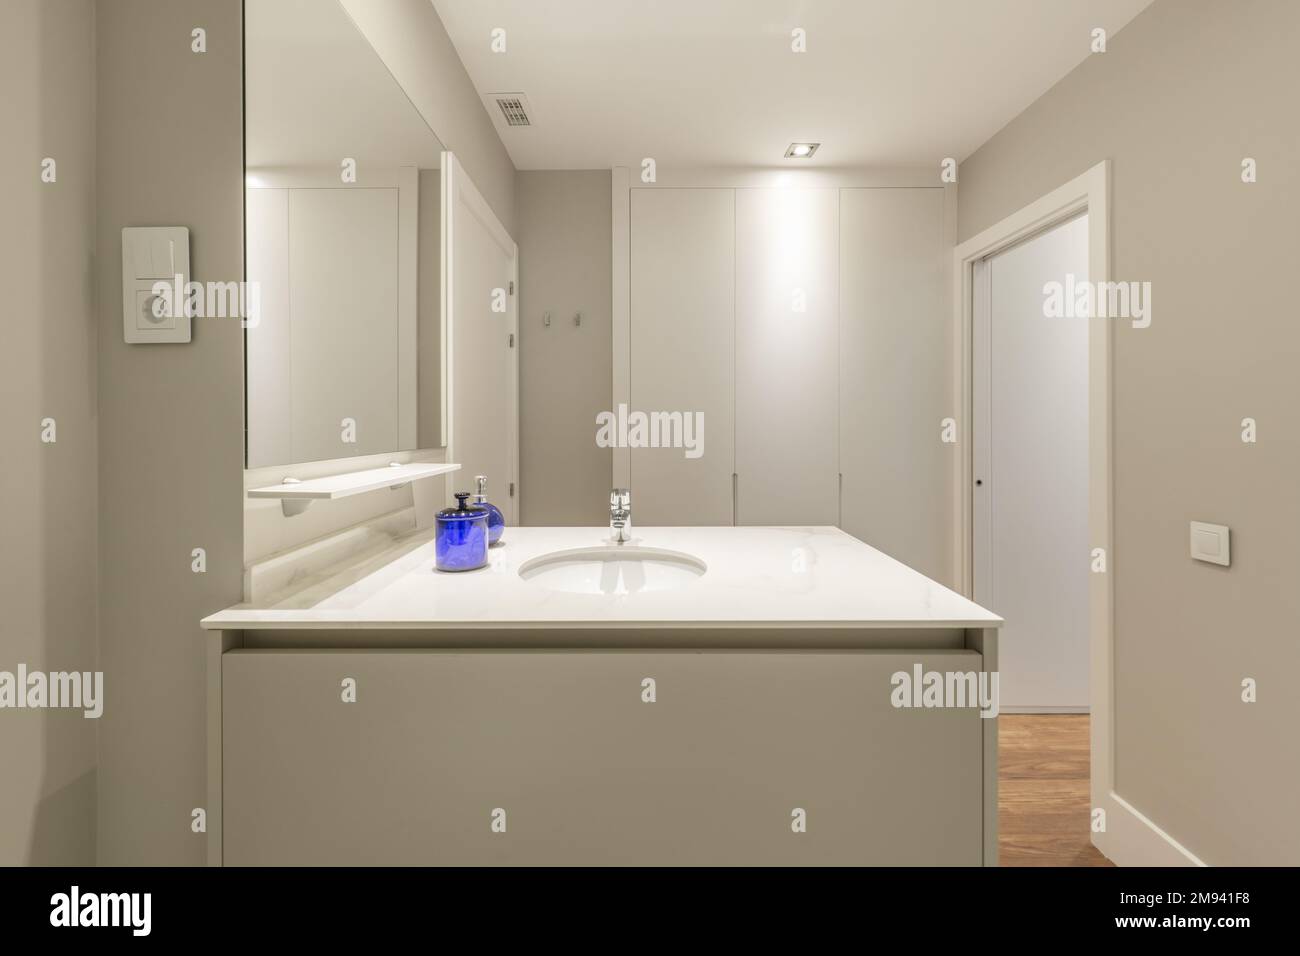 Salle de bains design avec lavabo en marbre central et armoires intégrées avec portes grises Banque D'Images